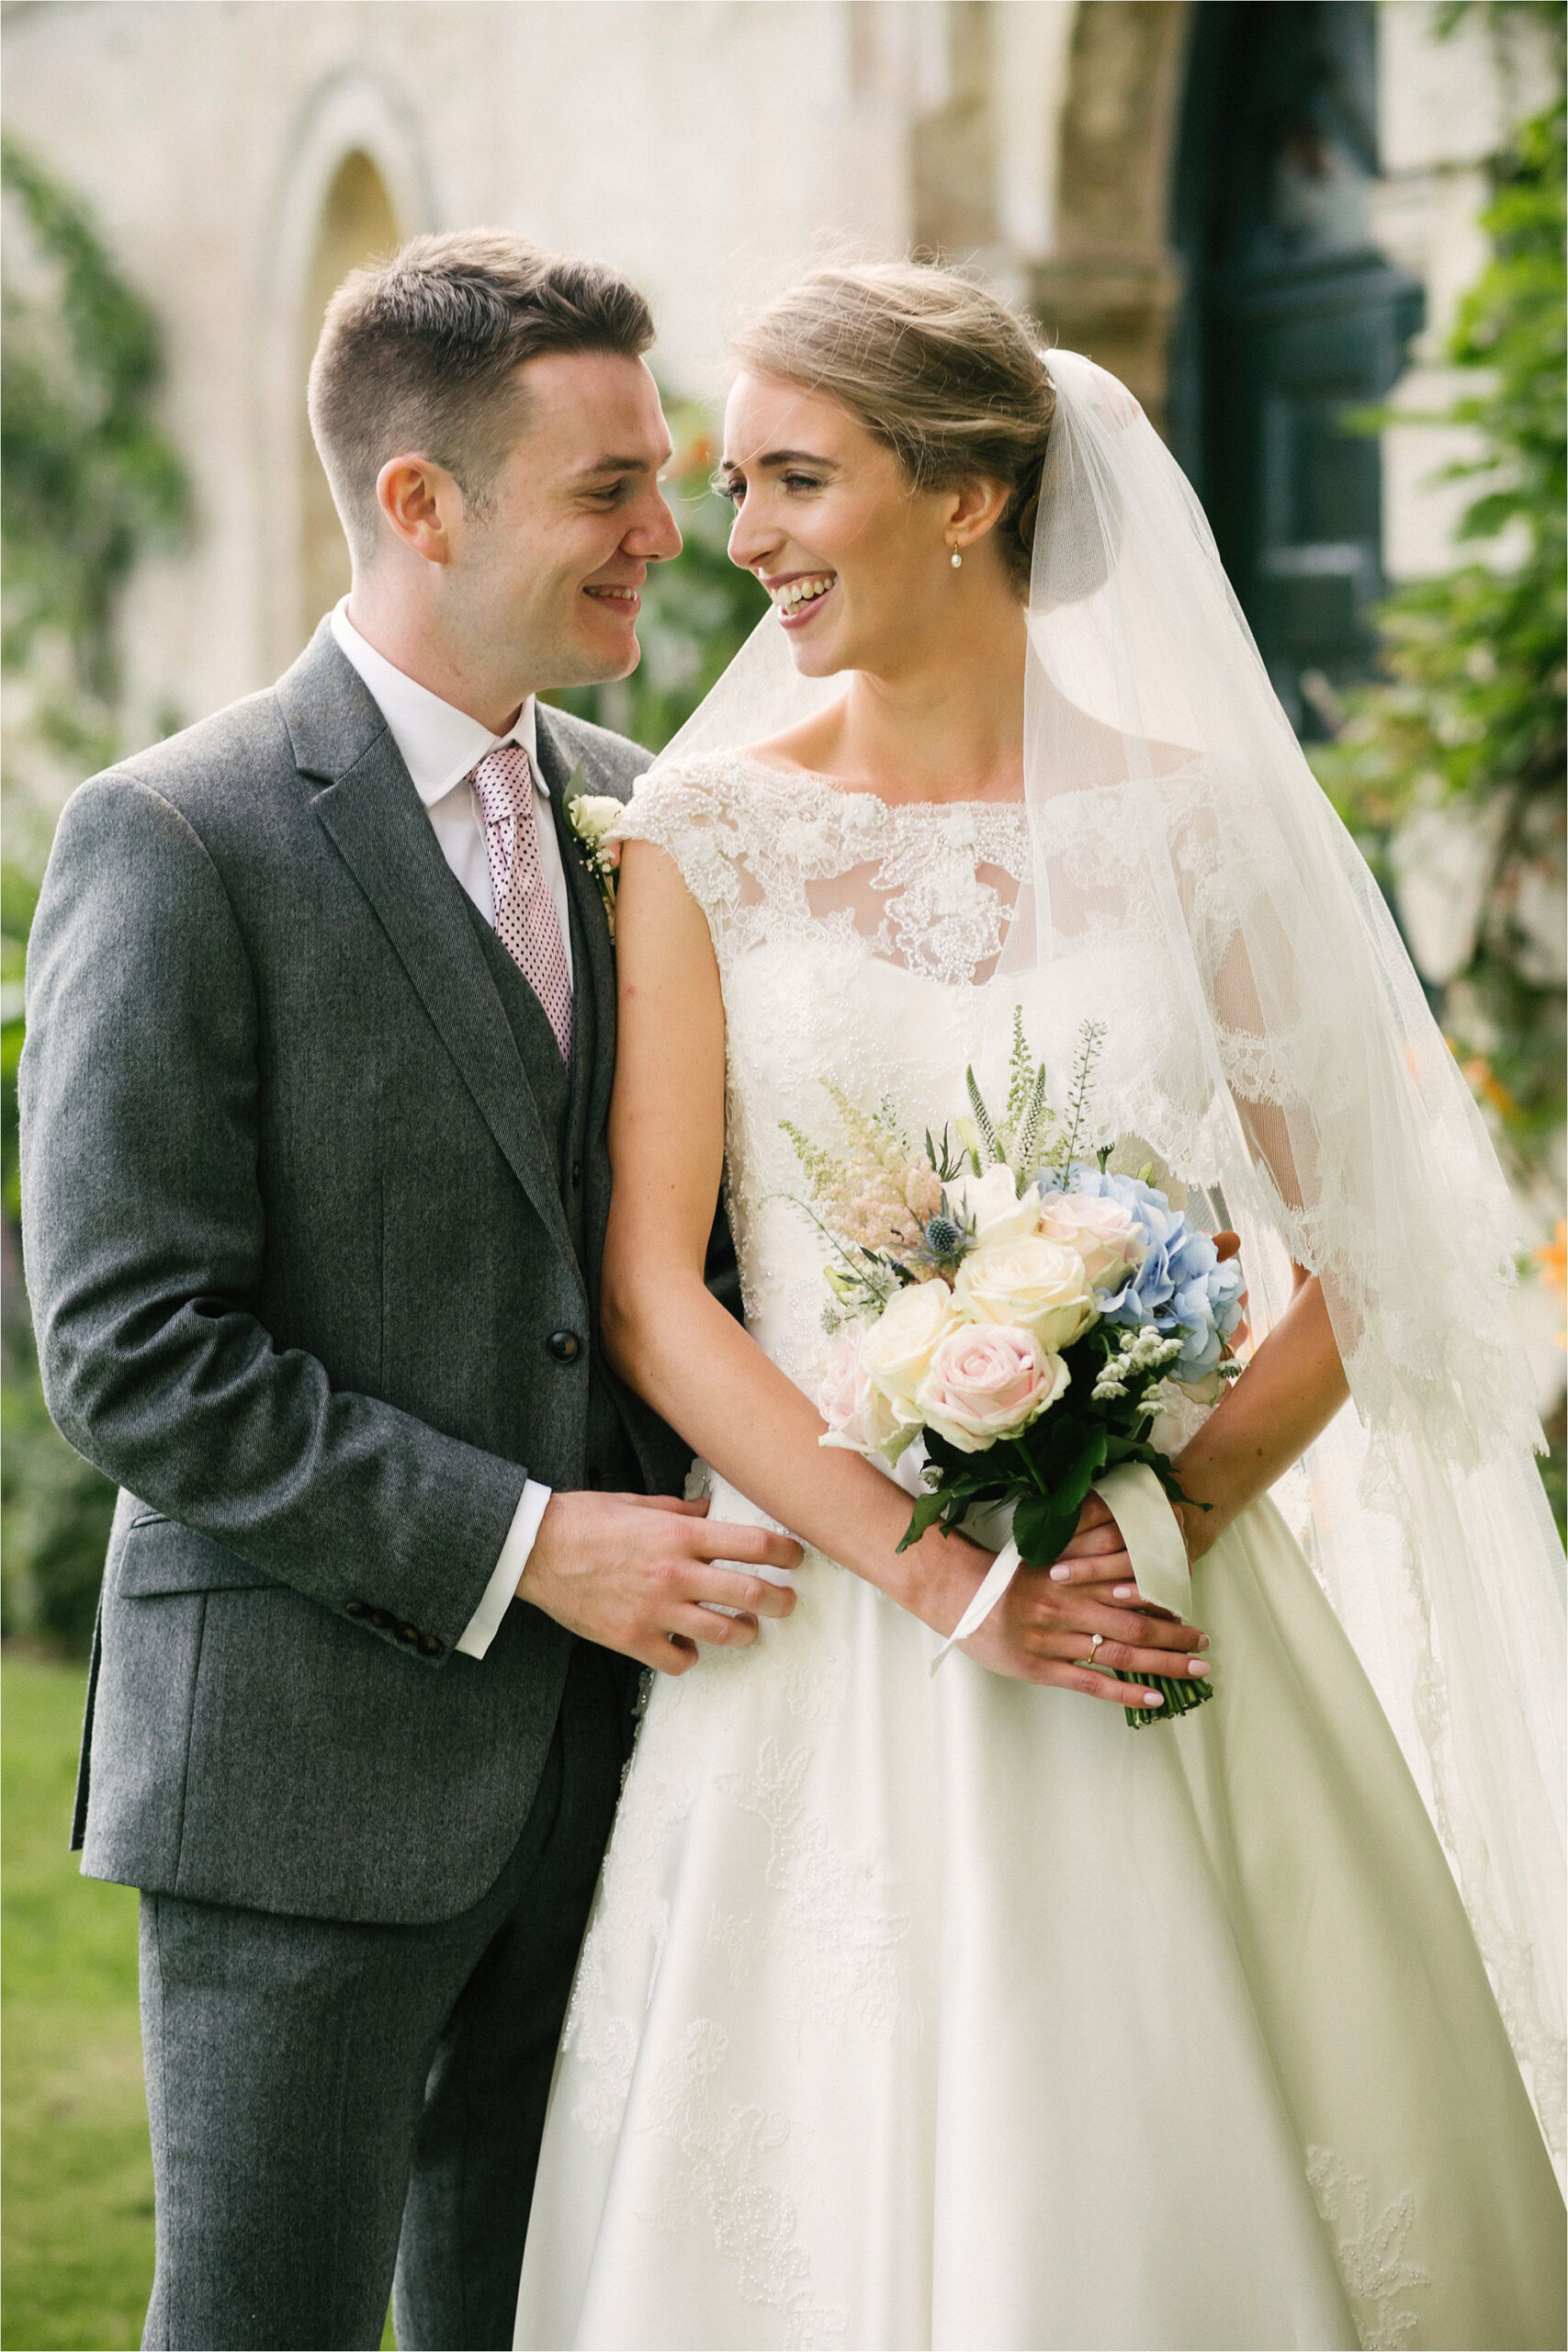 Gabrielle_Liam_Classic-English-Summer-Wedding_Lily-Sawyer-Photography_036